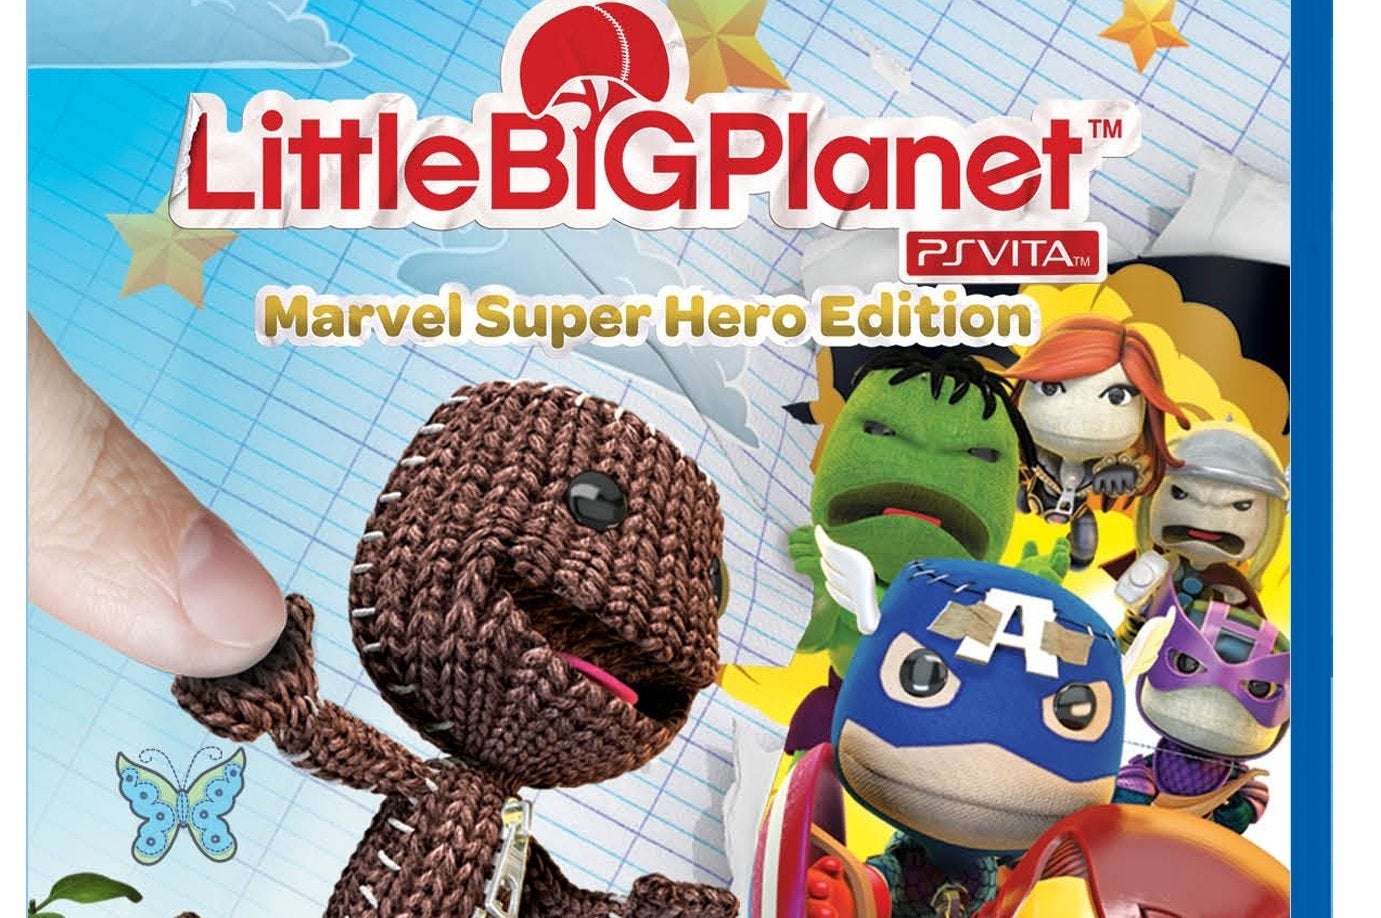 Imagen para Nueva edición de LittleBigPlanet Vita con contenidos de los personajes de la Marvel